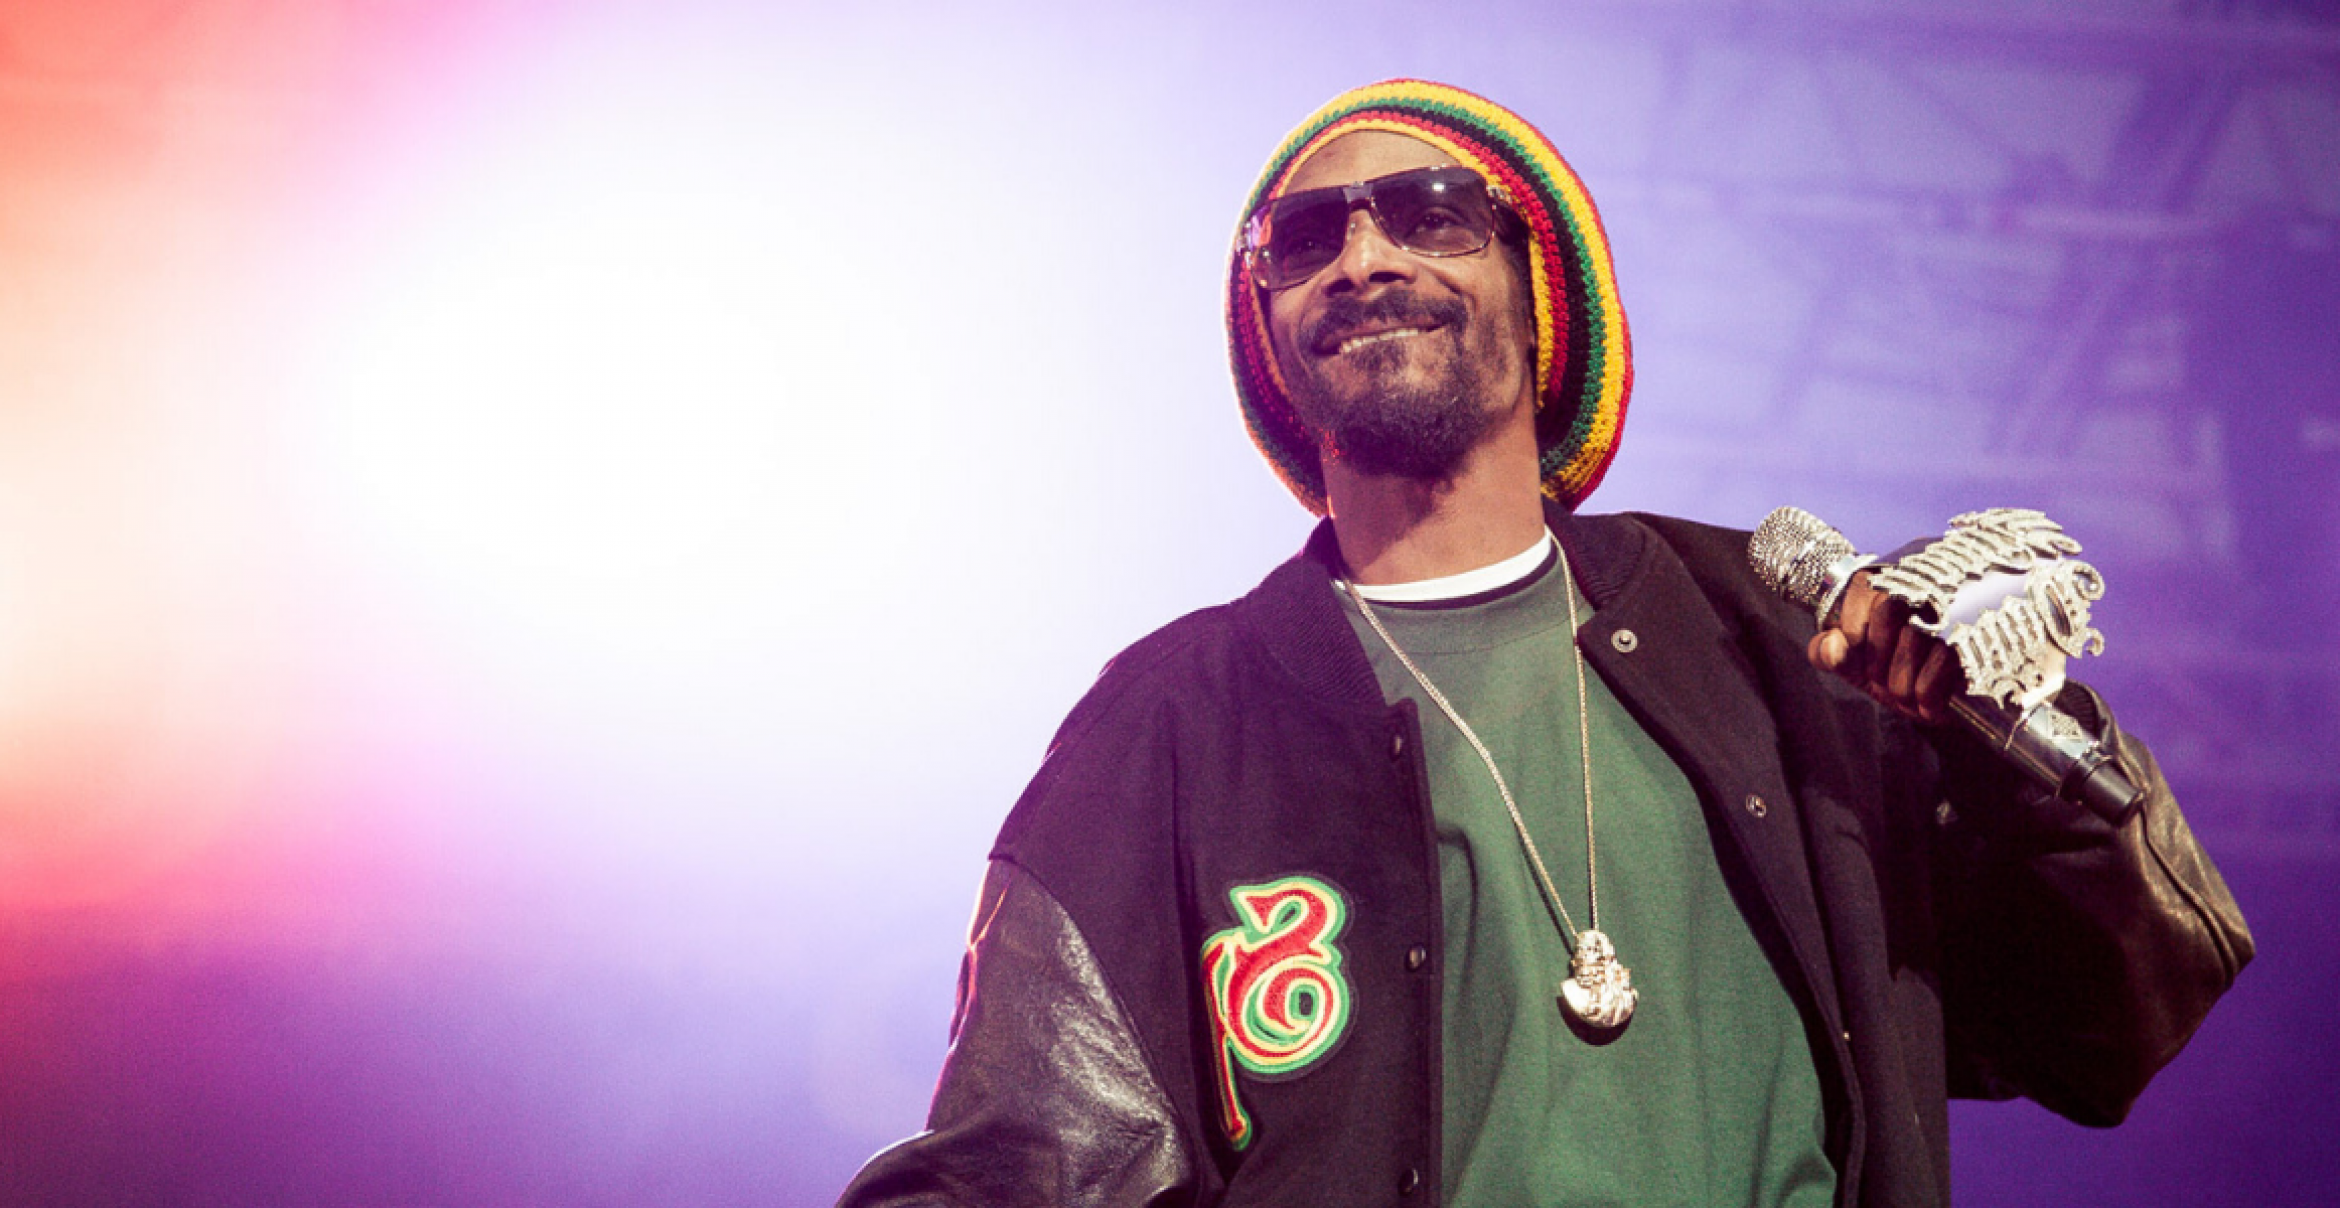 Endlich gute Nachrichten: Snoop Dogg wirbt für Corona